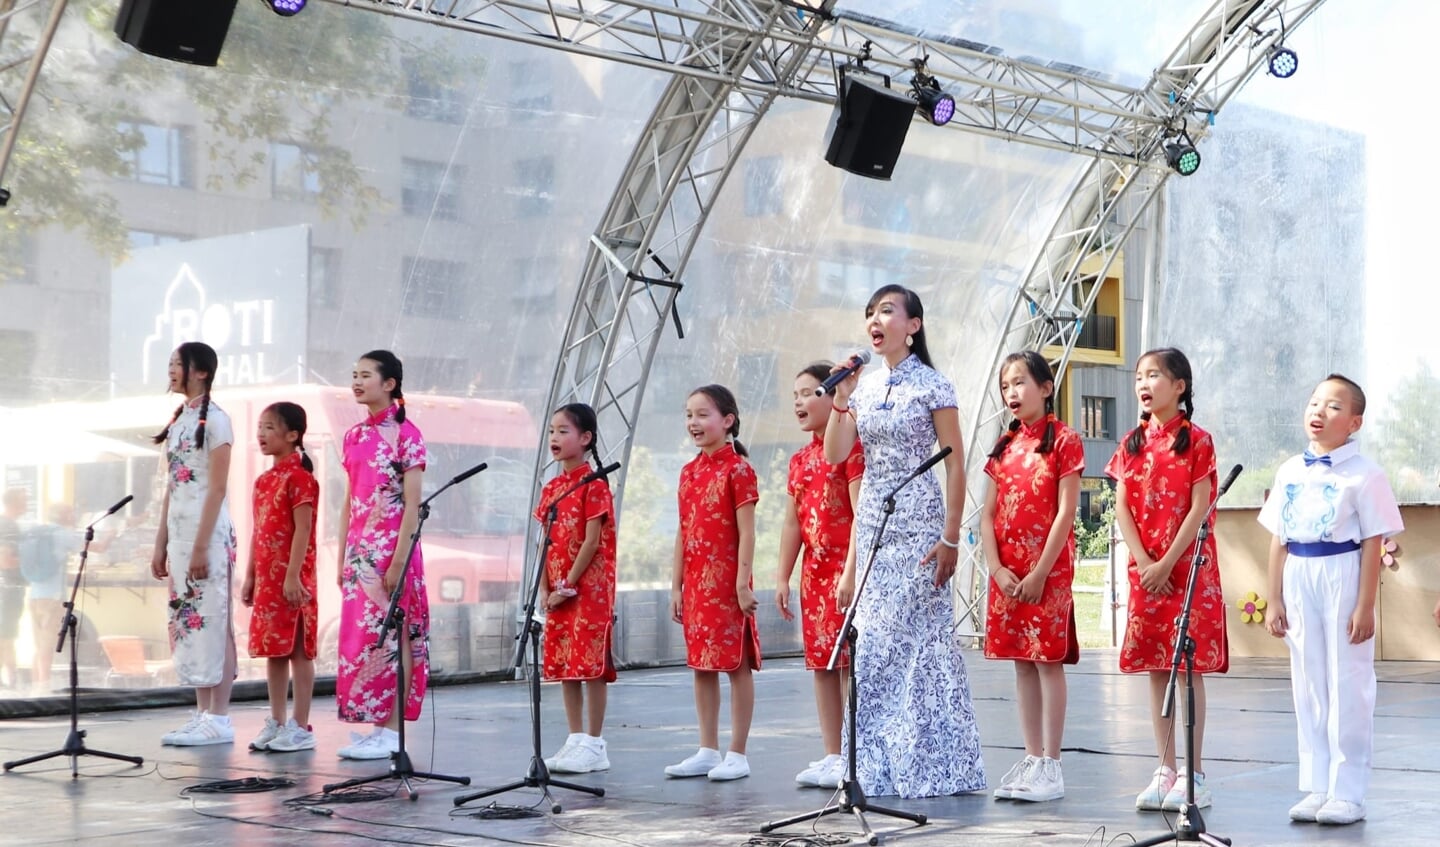 Sopraan Limin Sichi Yang met haar leerlingen op de Floriade. (Foto: aangeleverd)